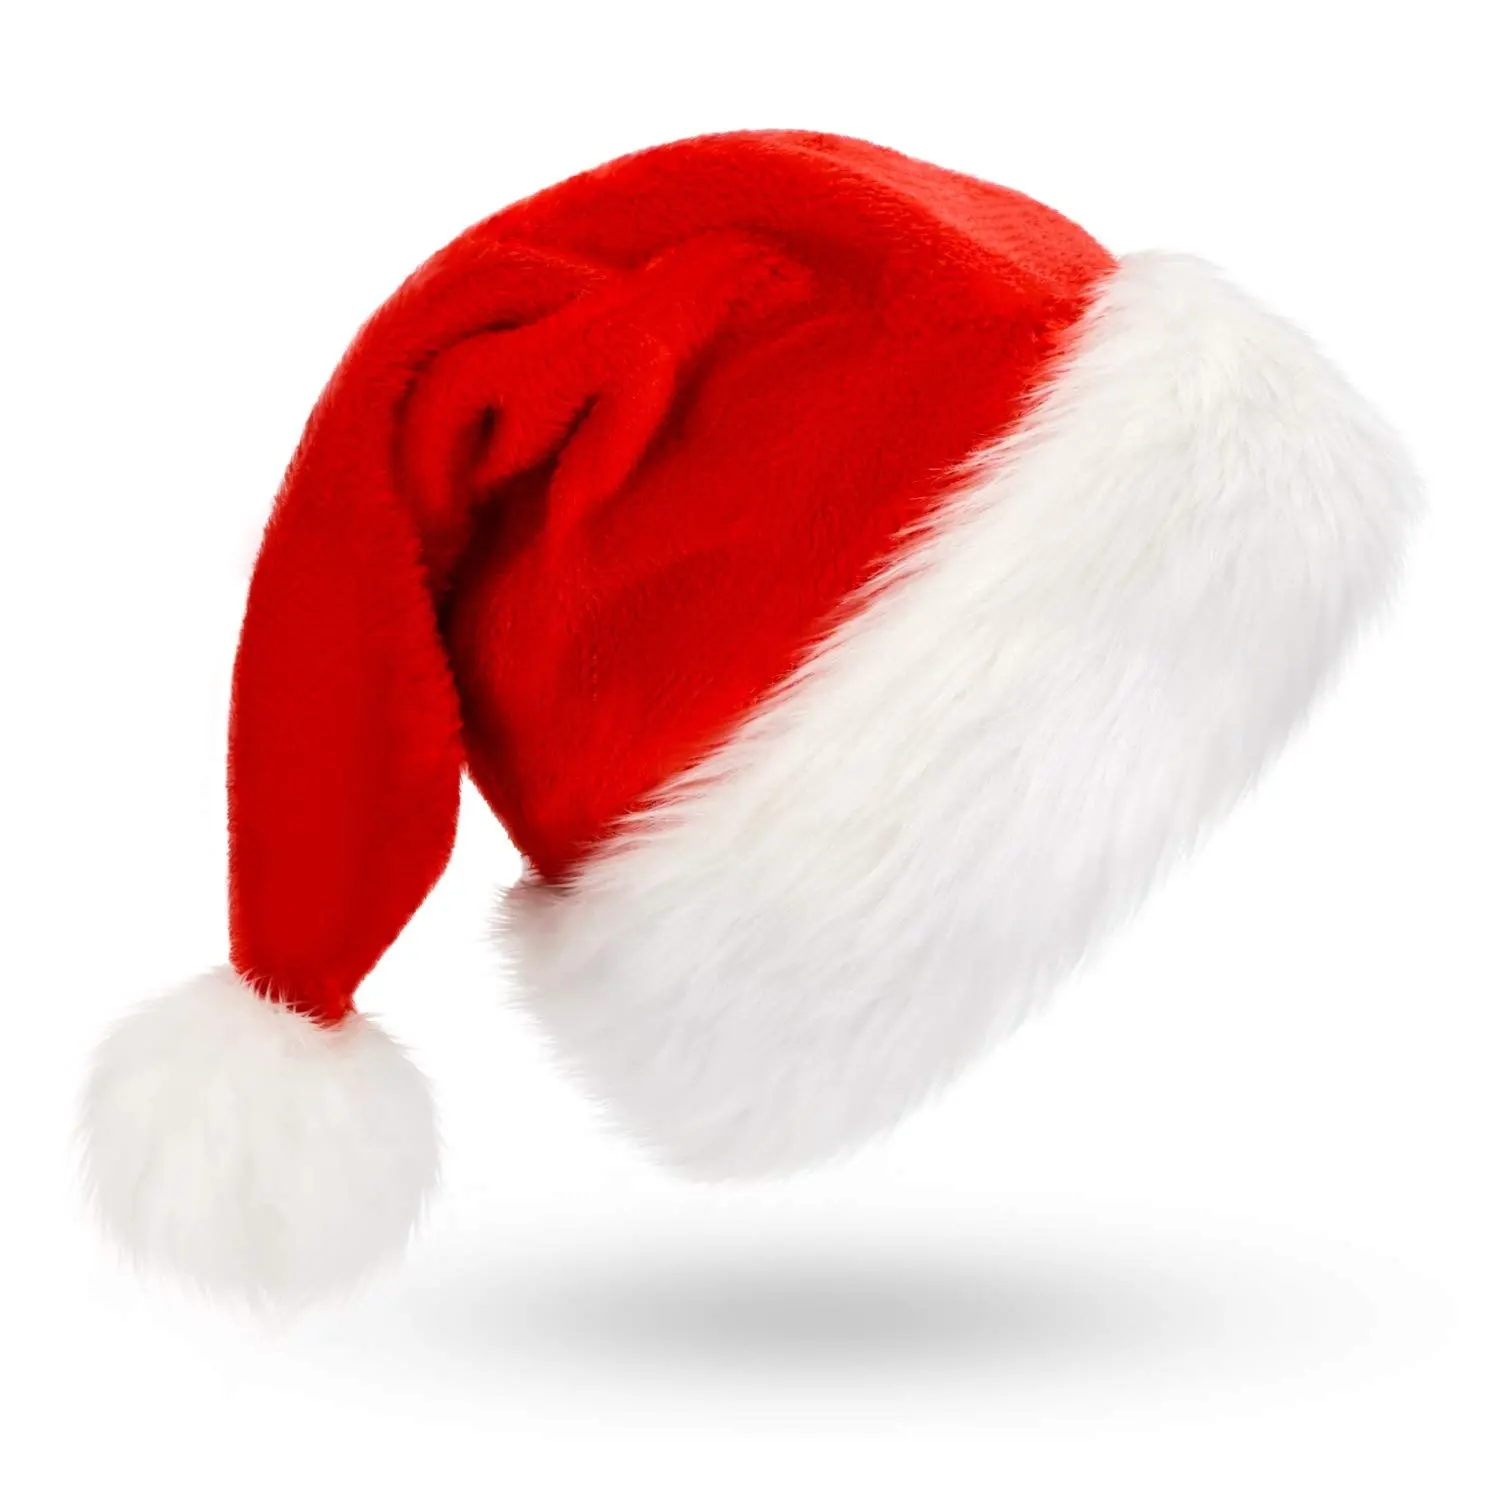 क्रिसमस सांता टोपी क्रिसमस छुट्टी टोपी घिरना क्लासिक फर वयस्कों यूनिसेक्स मखमल आराम क्रिसमस टोपी क्रिसमस नए साल के लिए